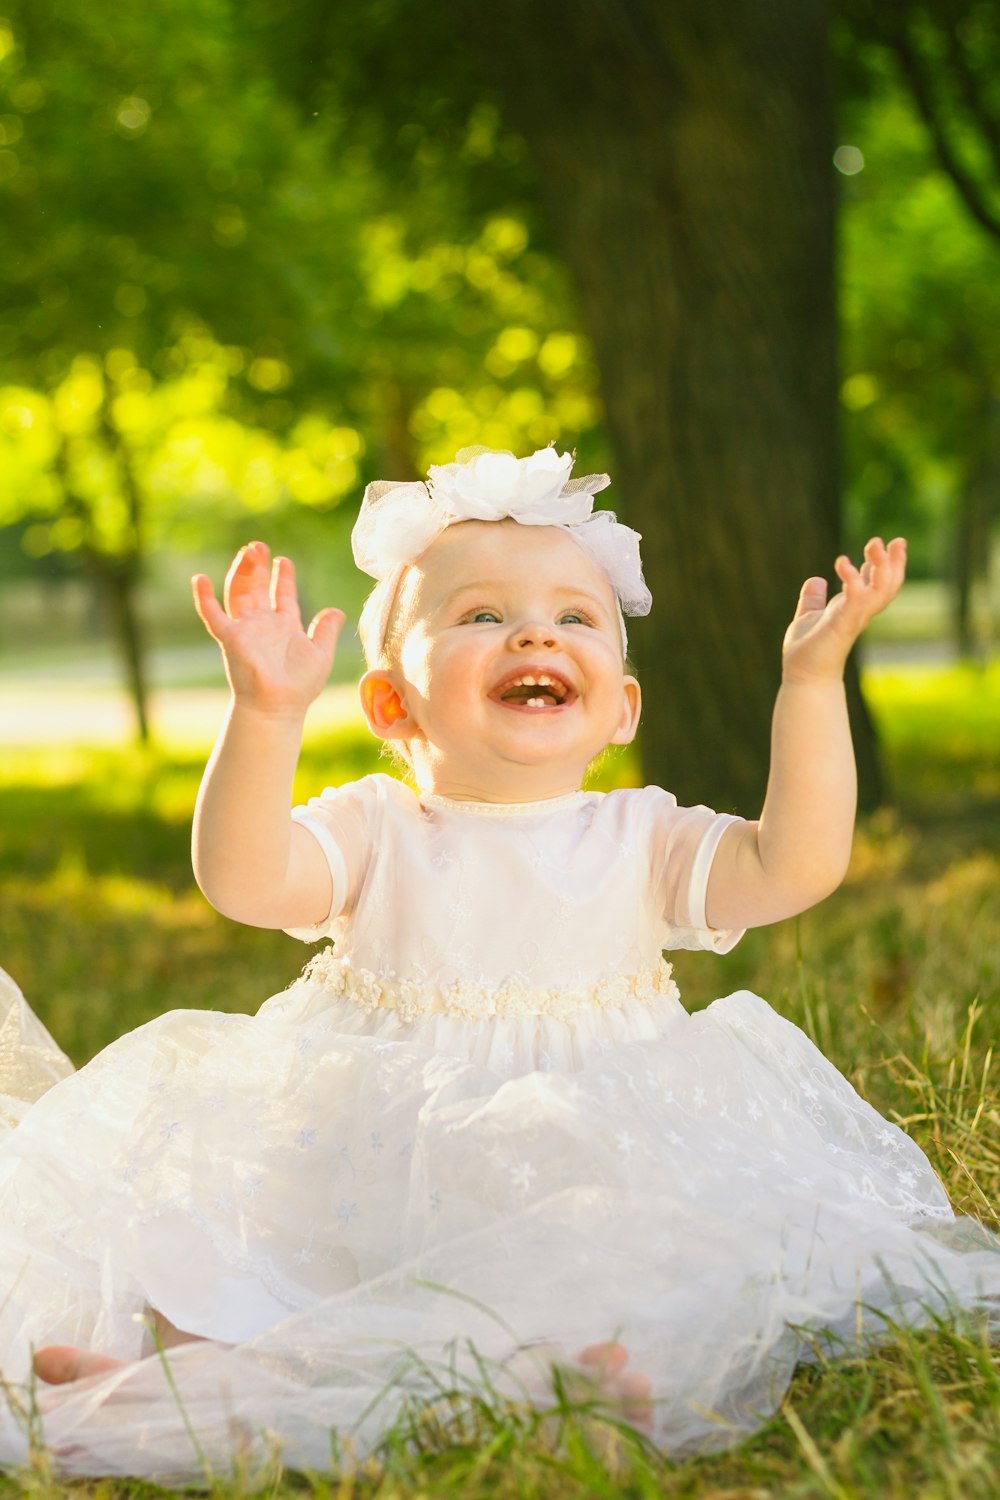 Una niña con un vestido blanco sentada en la hierba